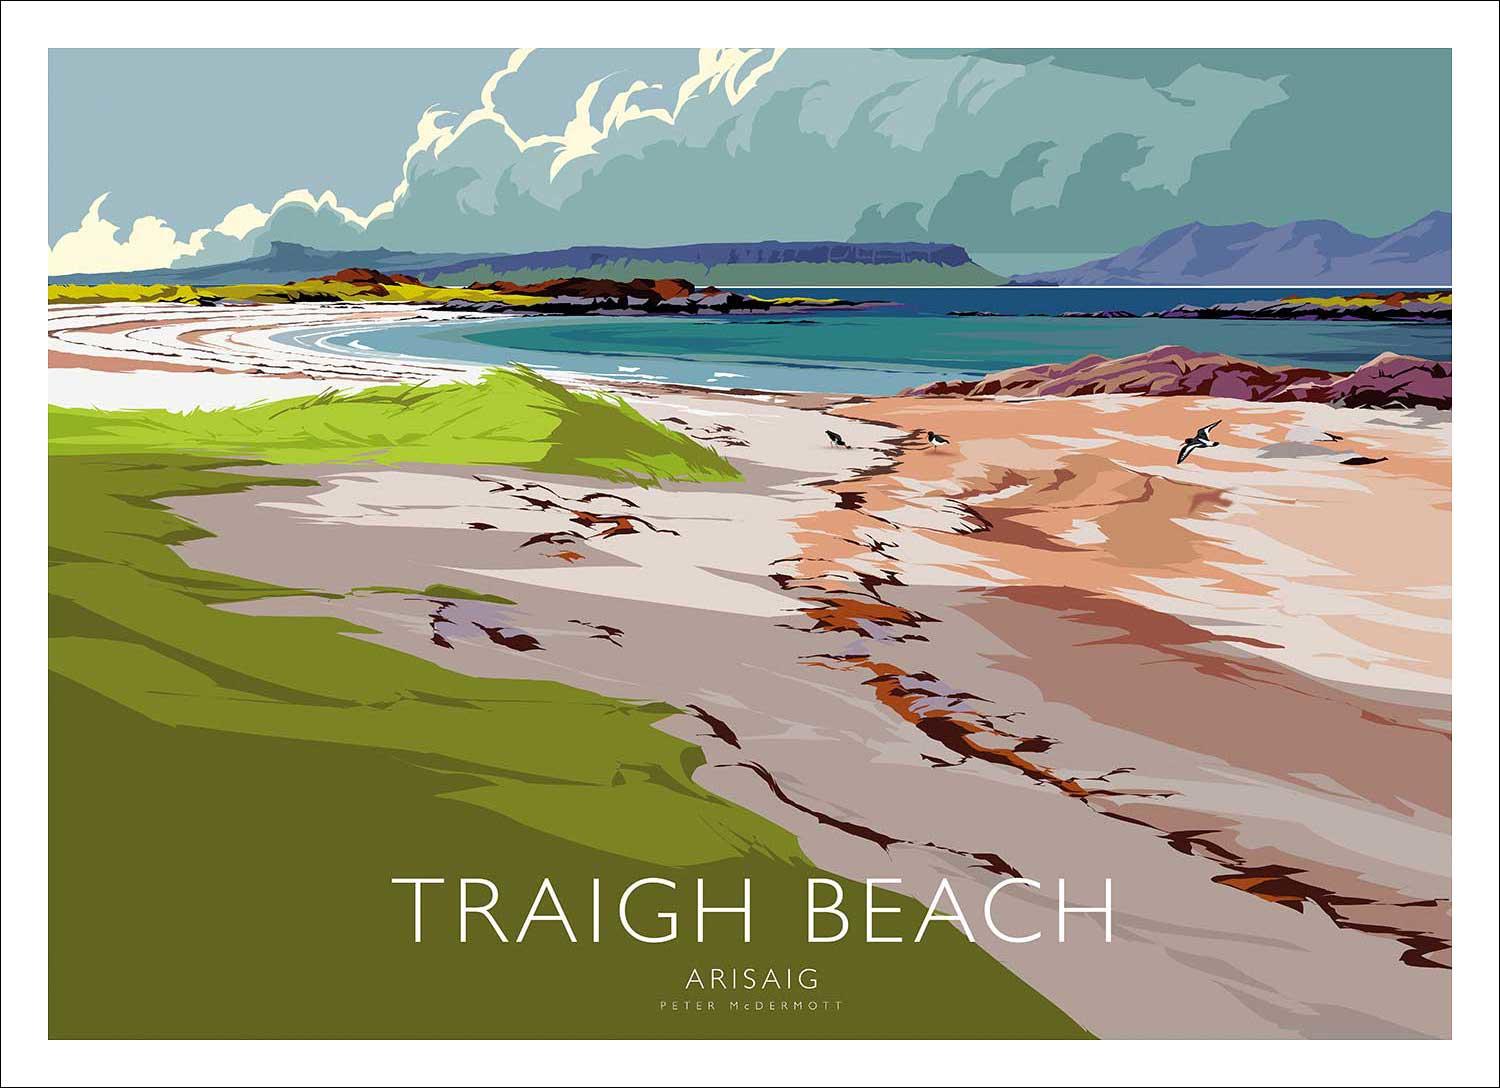 Traigh Beach Art Print from an original illustration by artist Peter McDermott